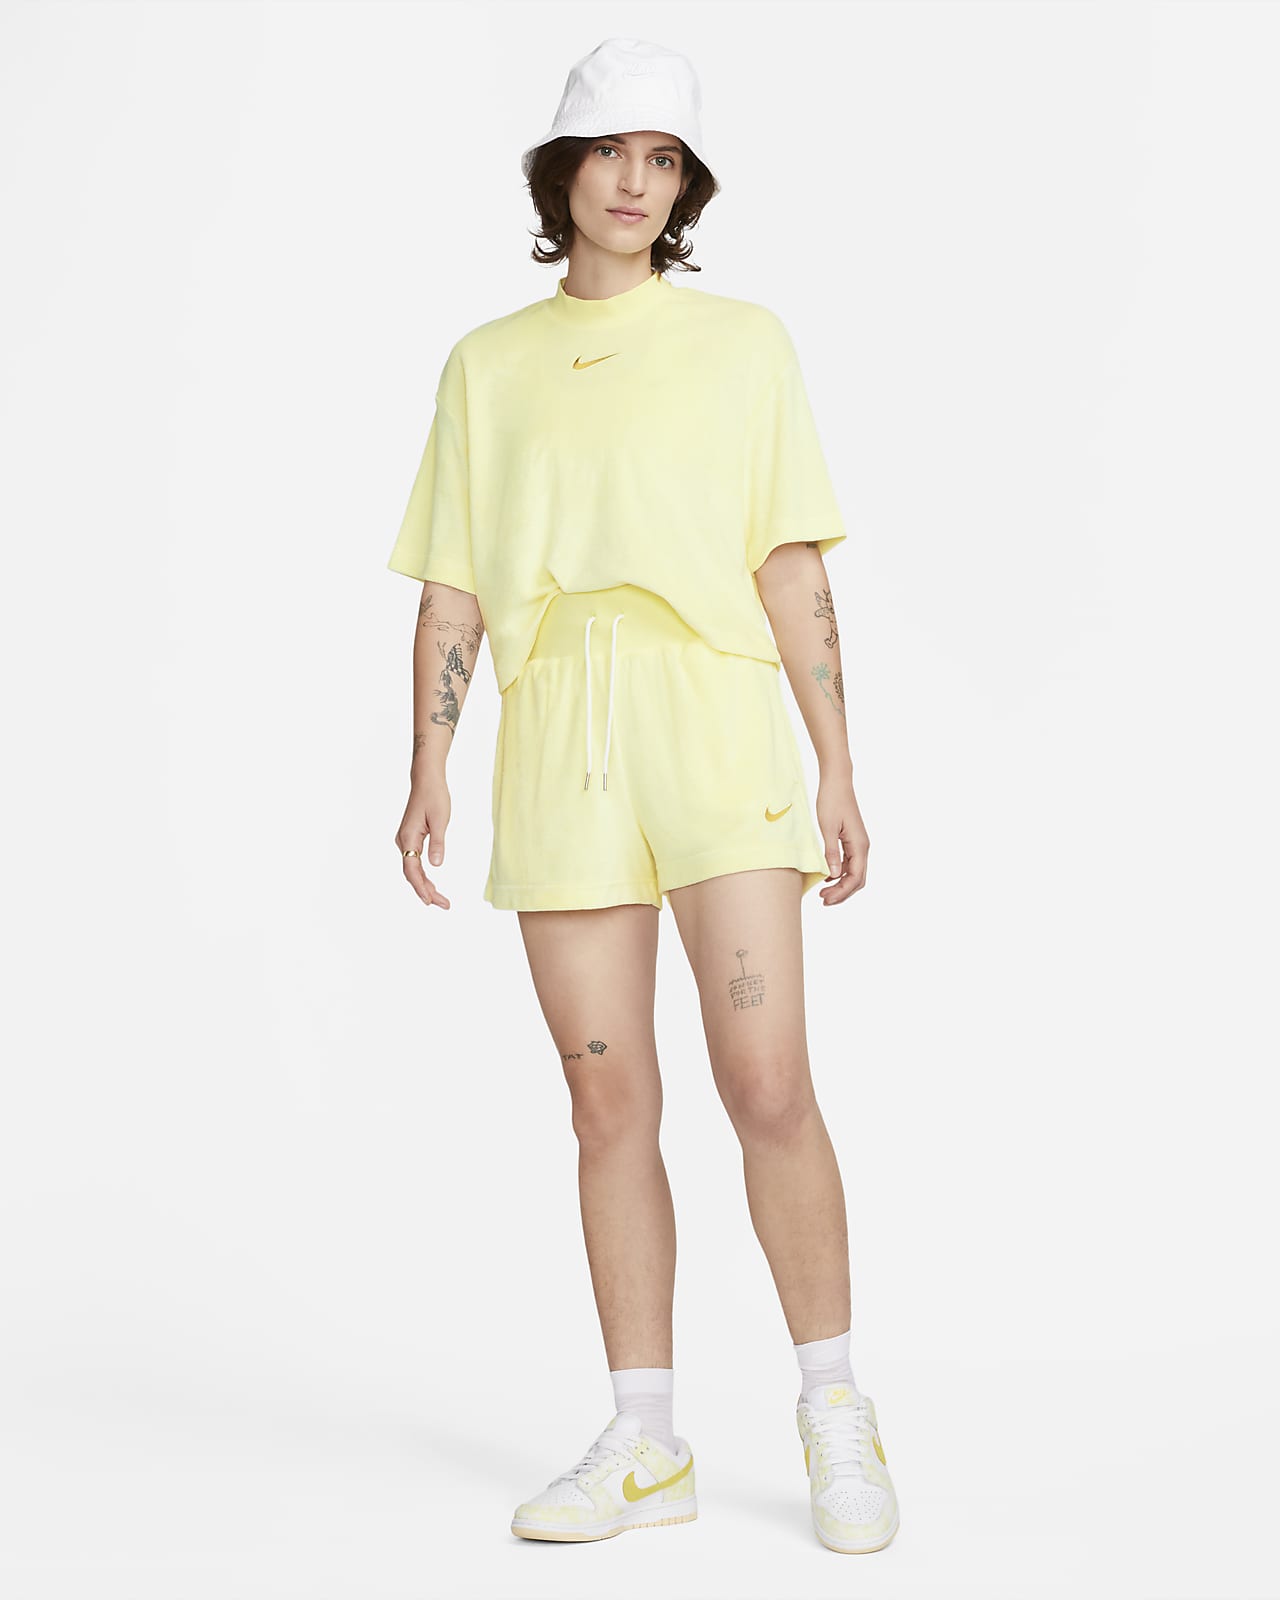 Begrenzter Lagerbestand verfügbar Nike Sportswear Women\'s Terry Shorts